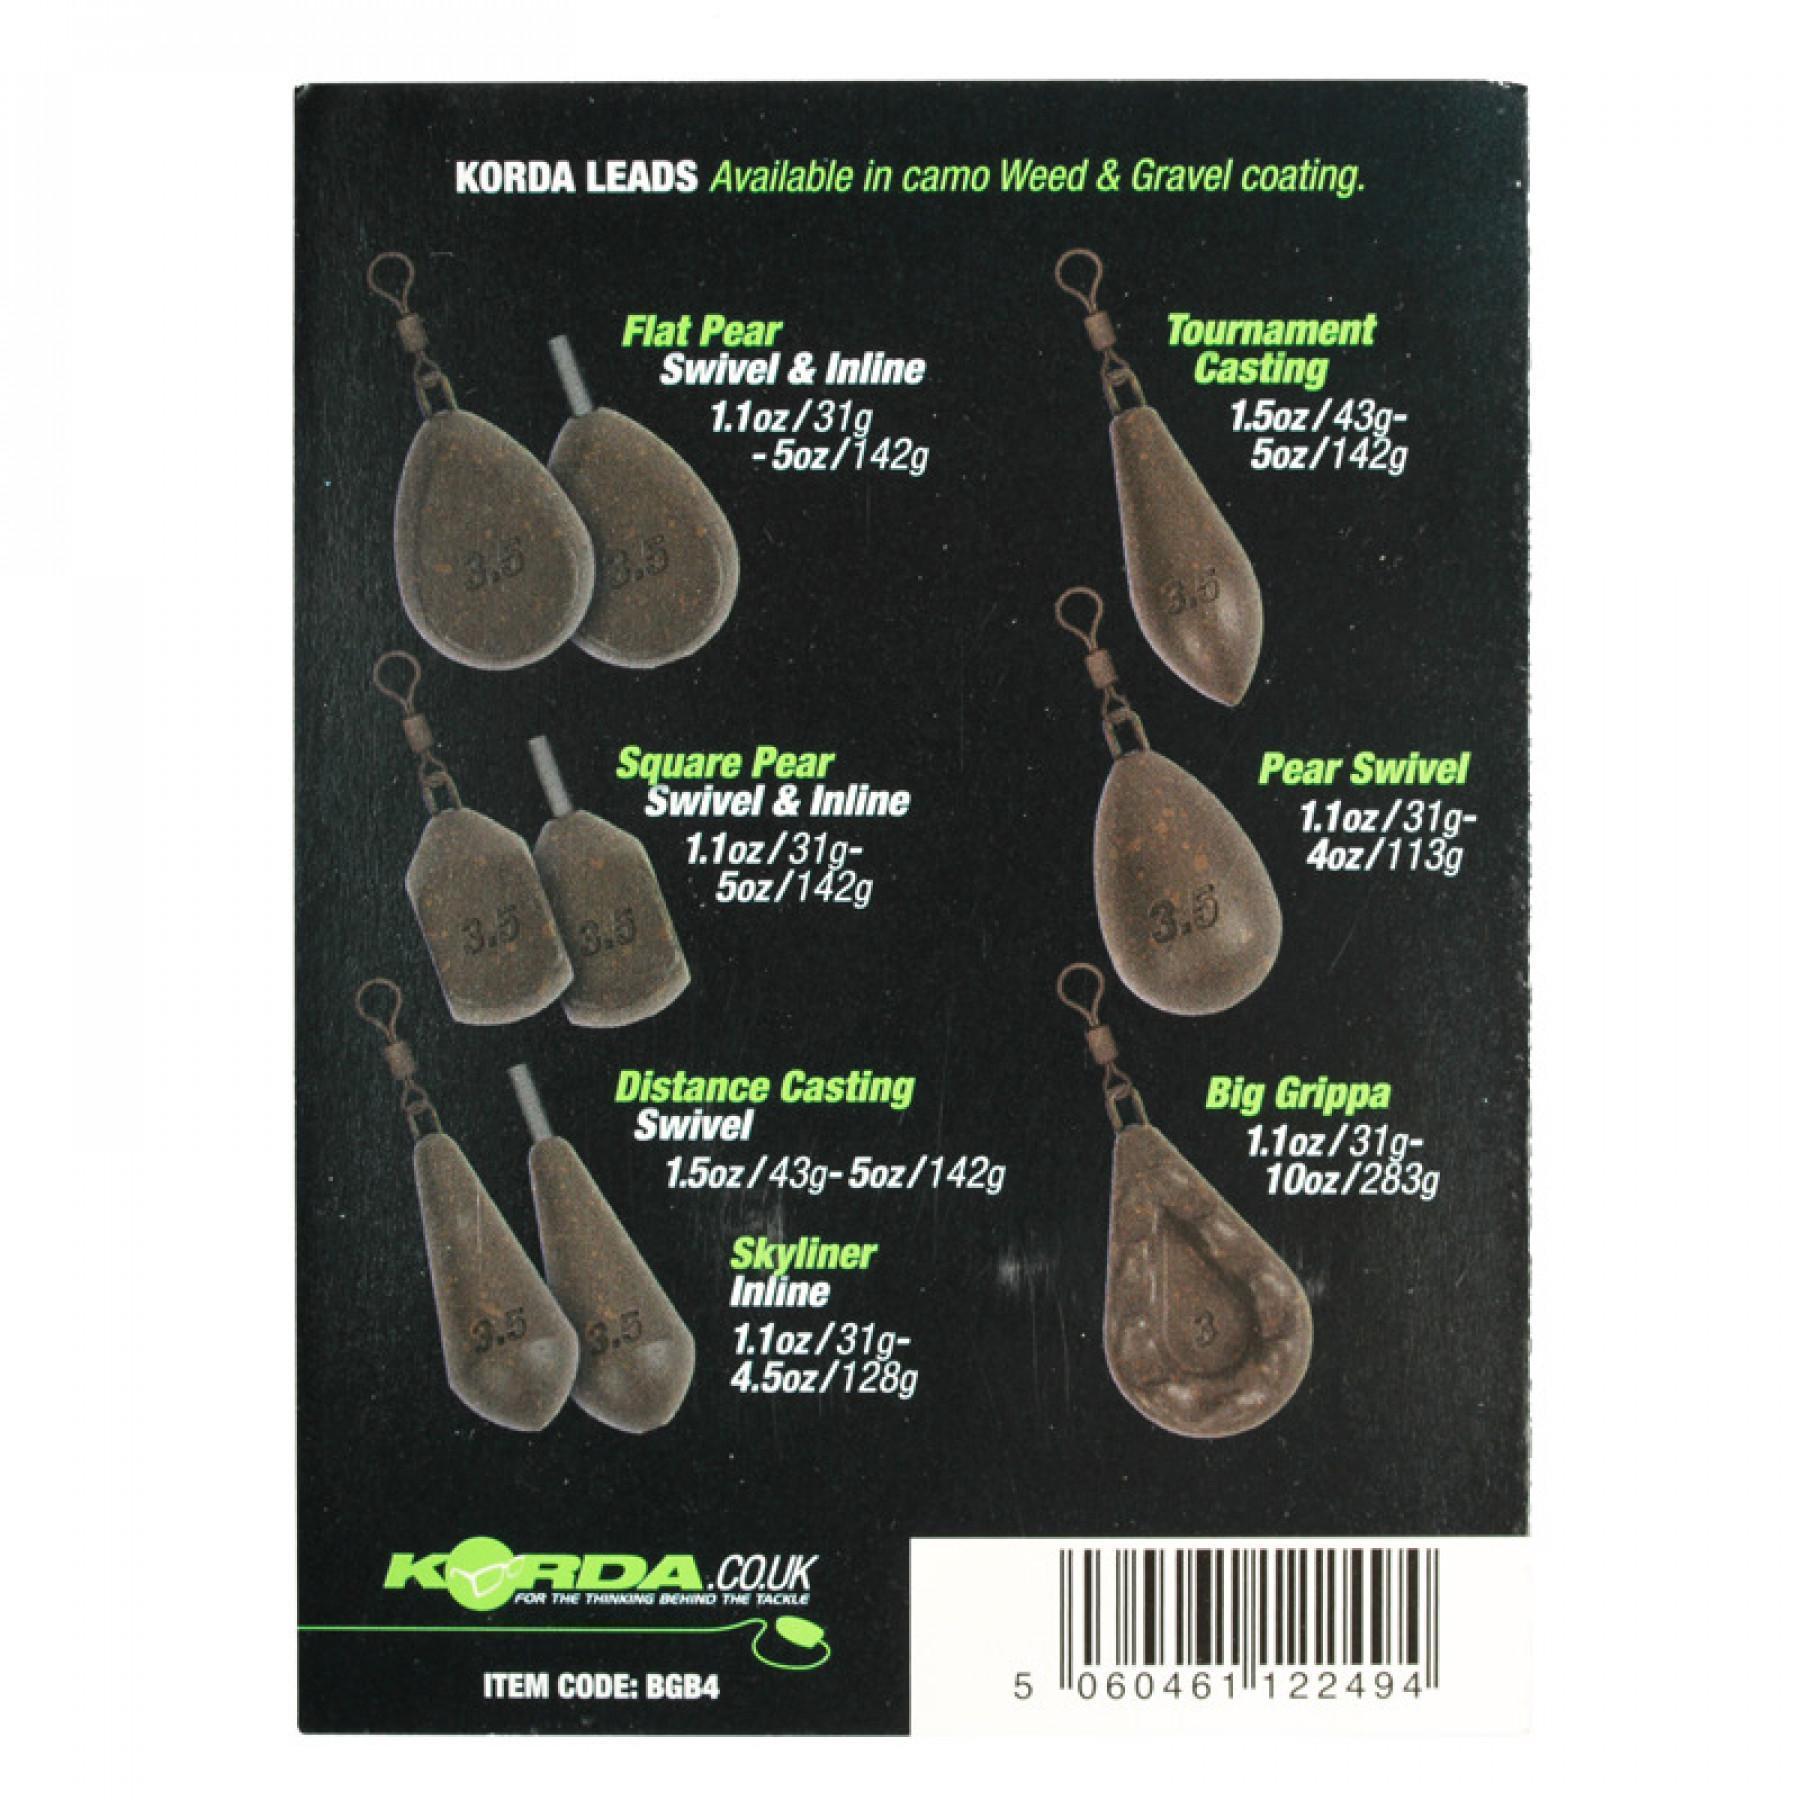 Ołów karpiowy Korda Flat Pear Inline Blistered 3.5oz